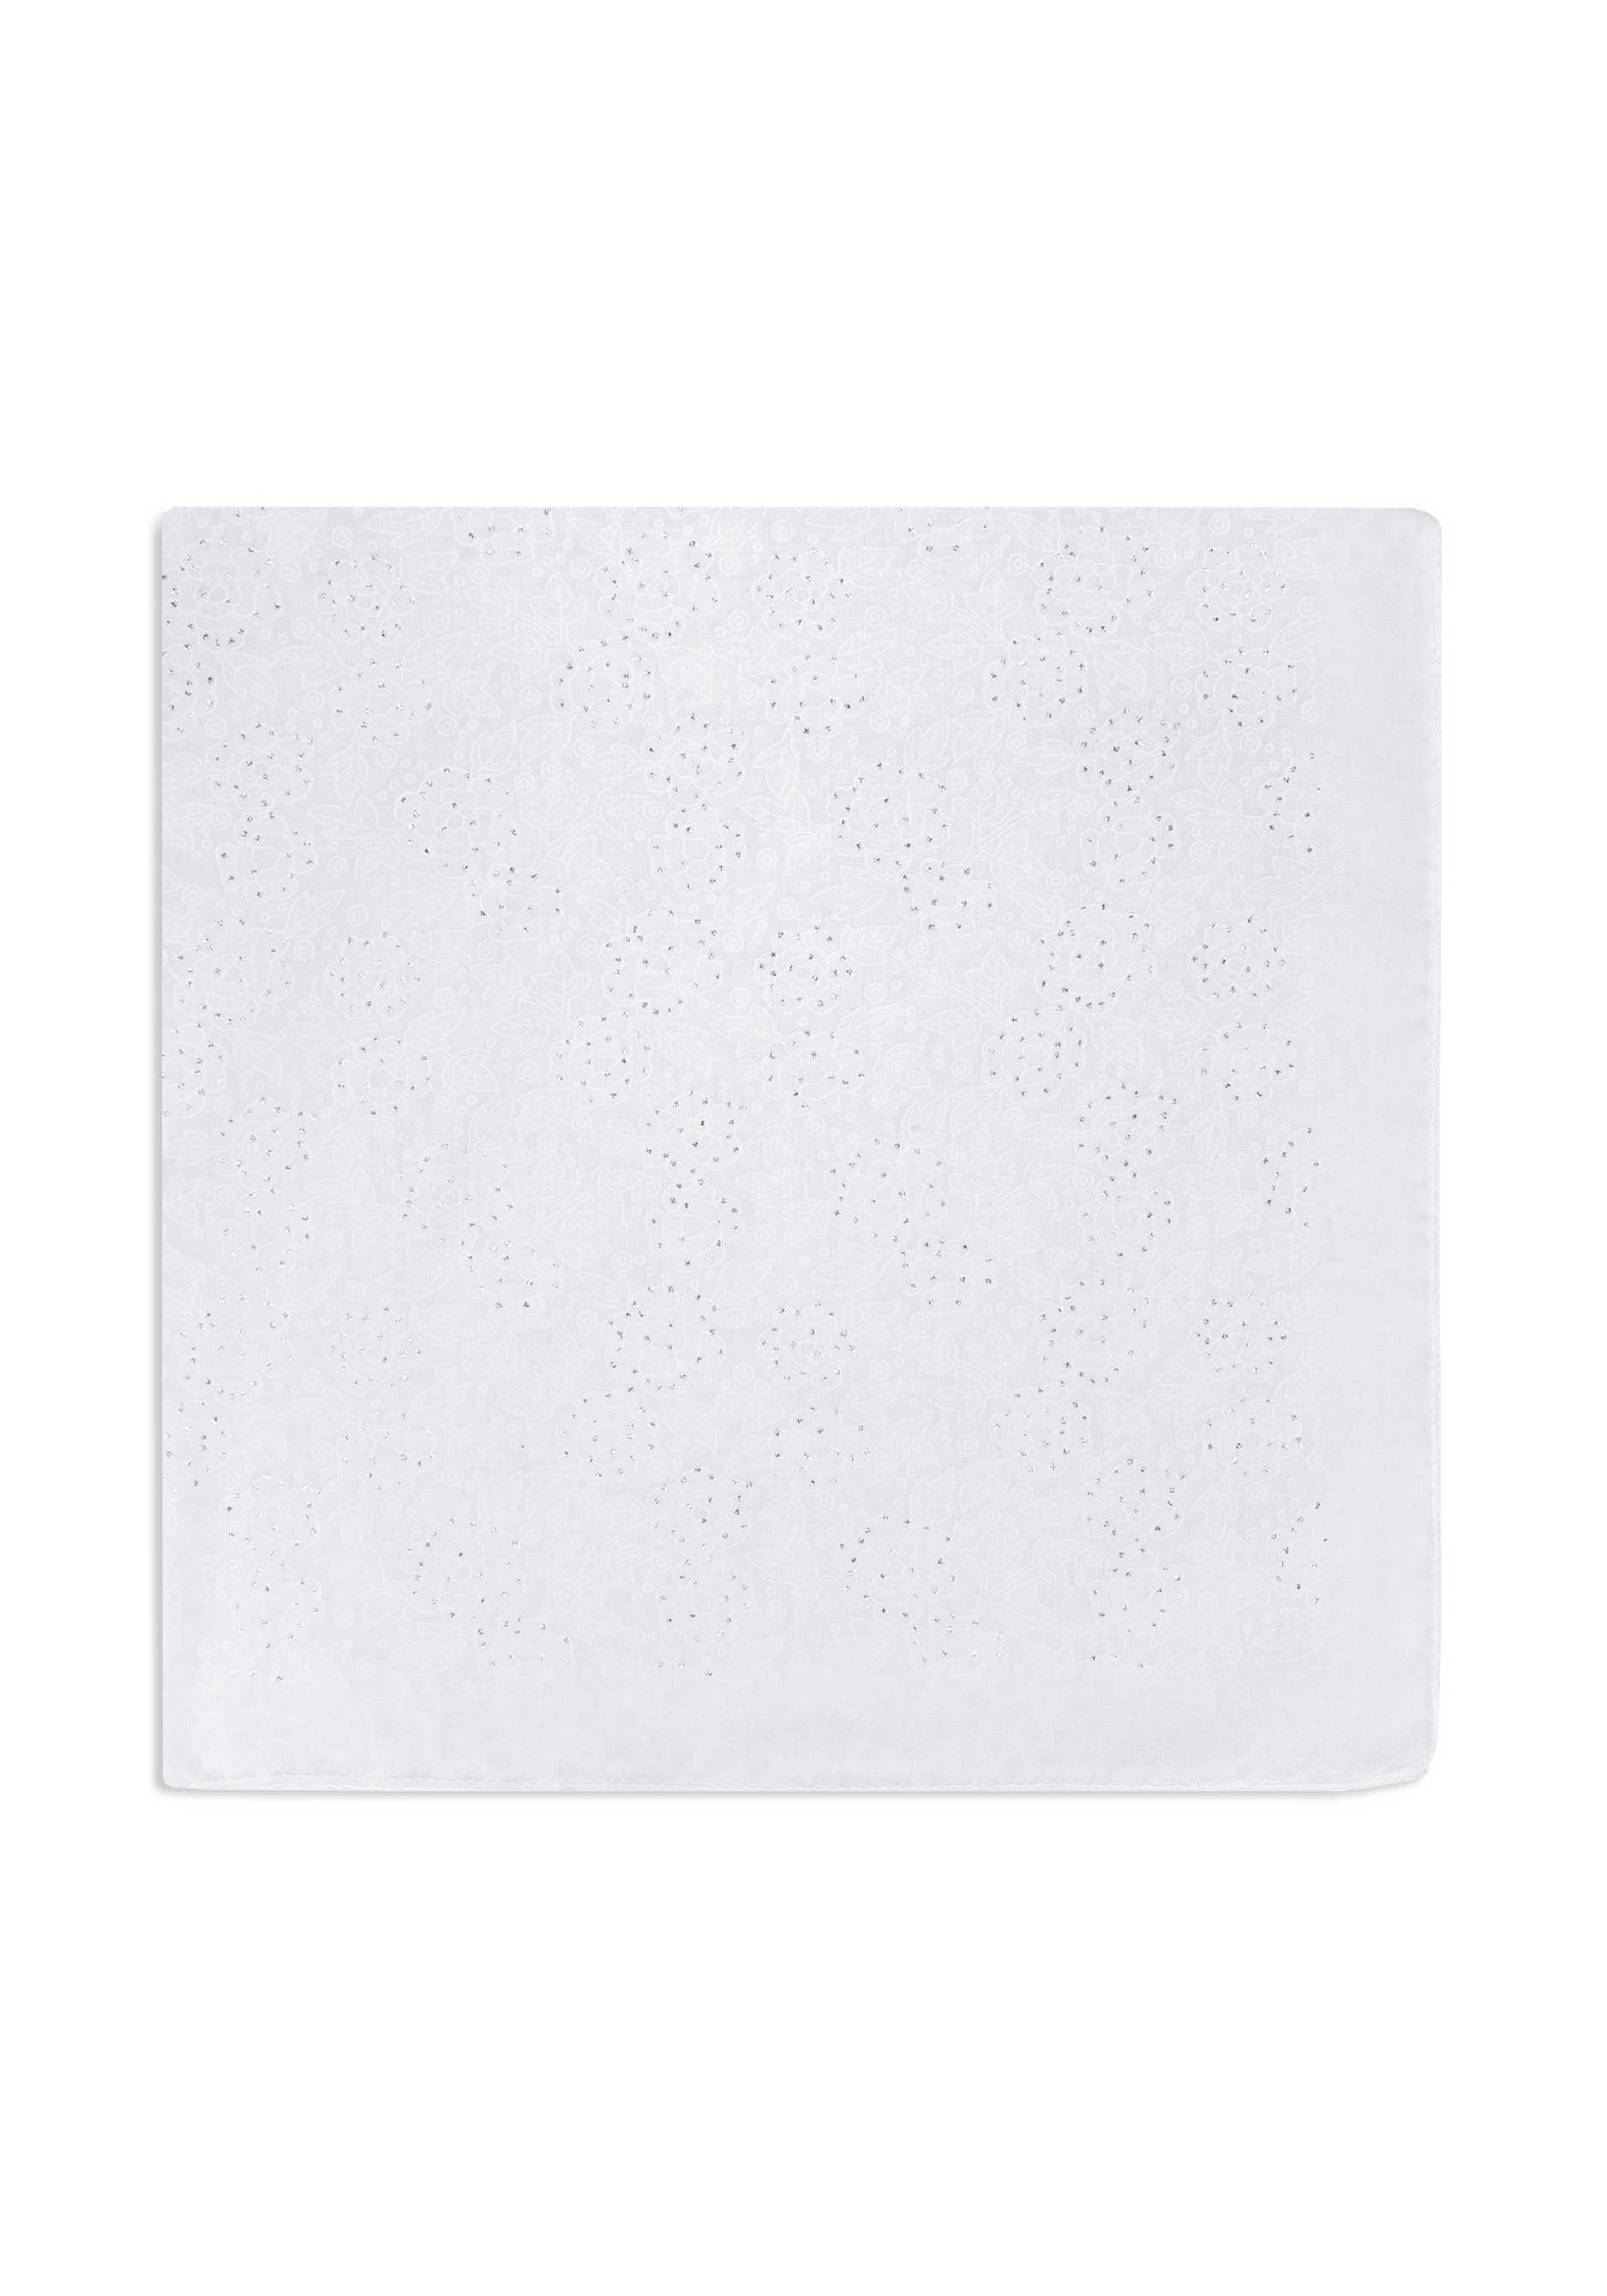 Платок "Небесное мерцание", цвет белый, размер 71*71см